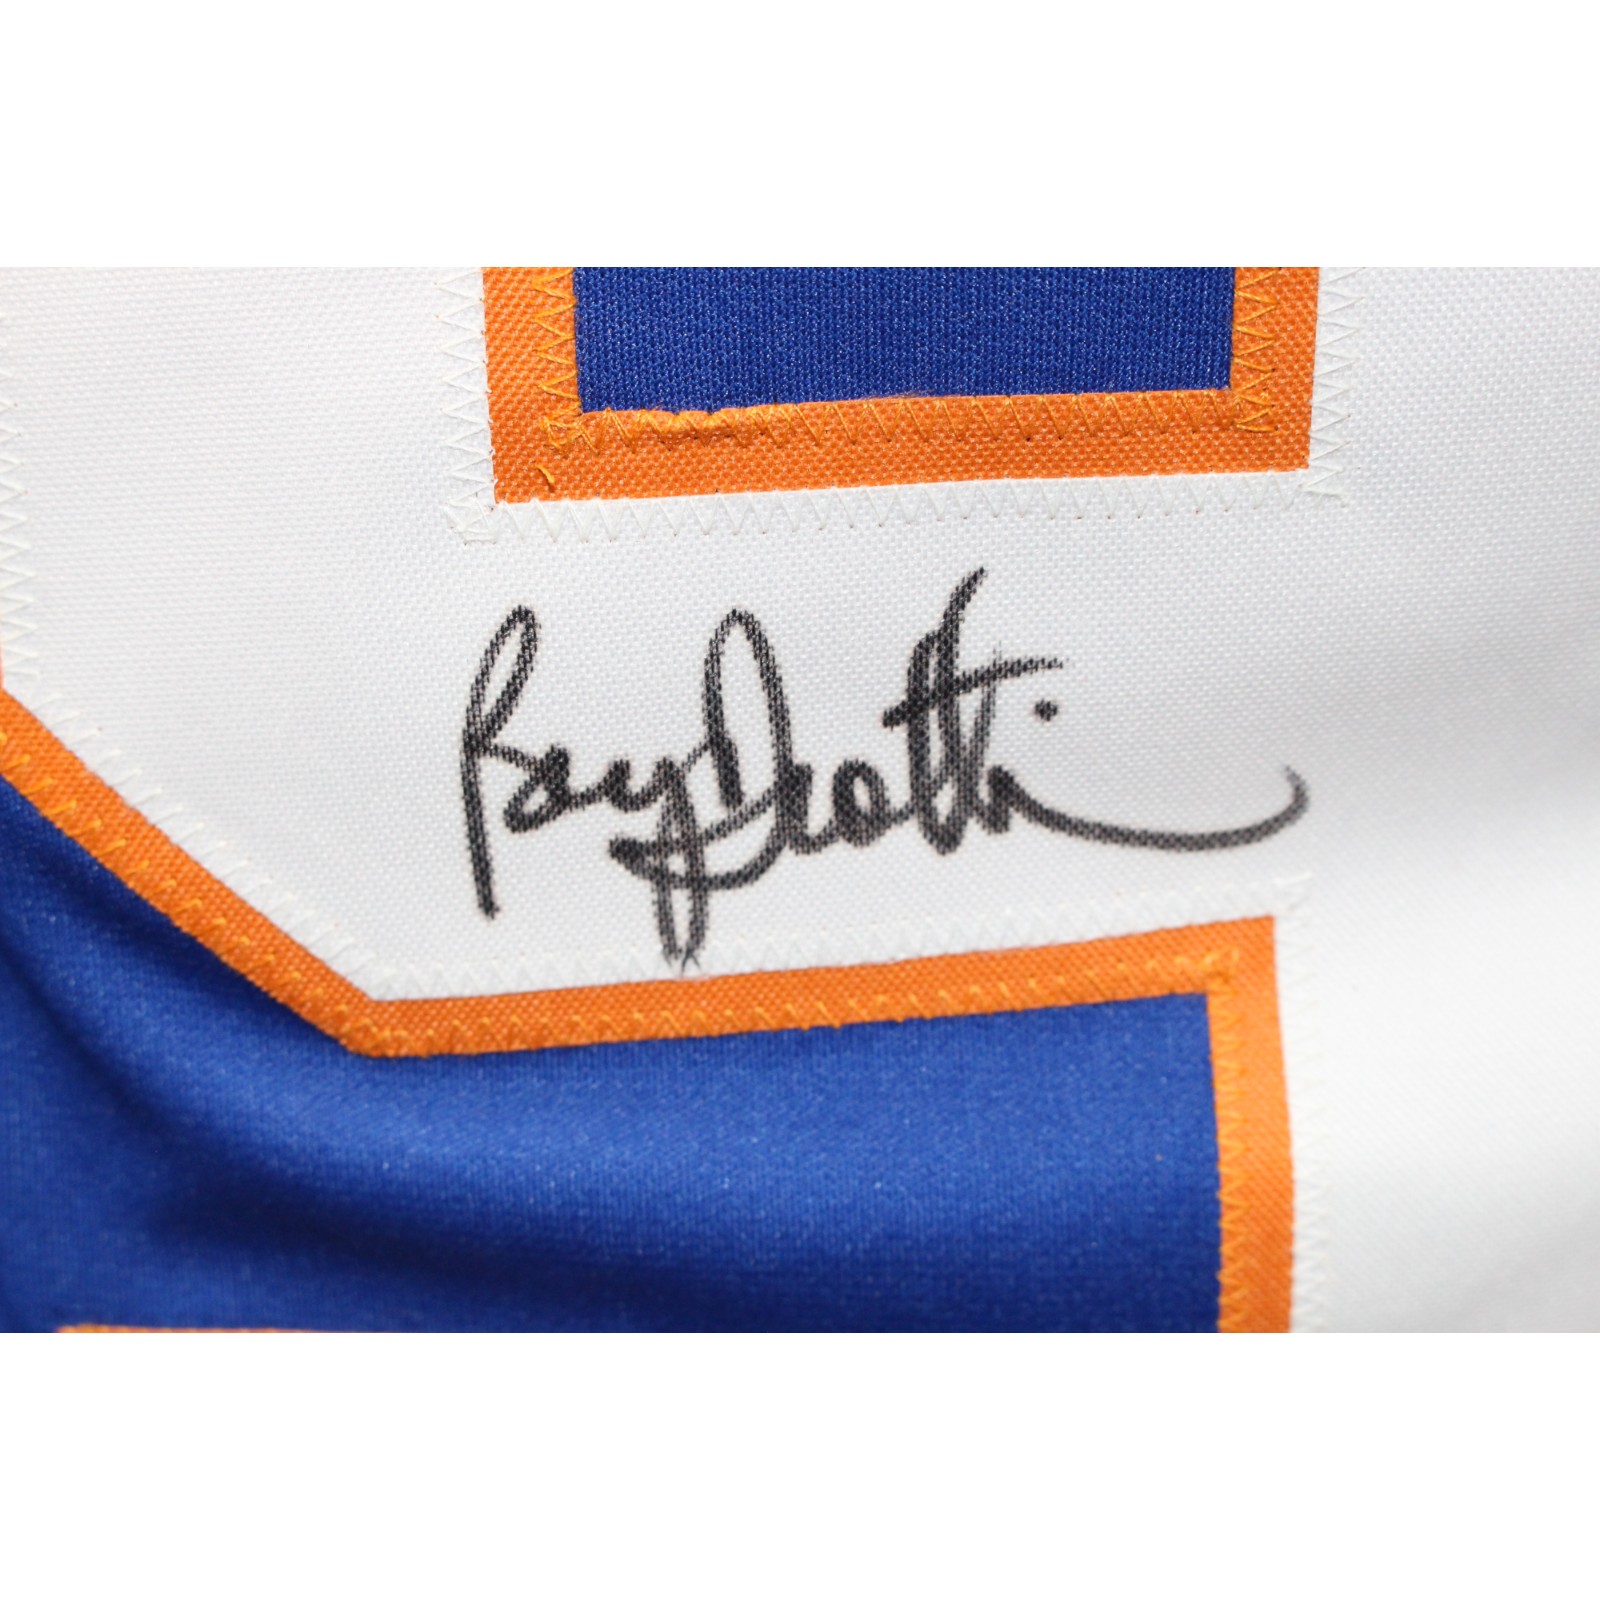 Bryan Trottier Autographed/Signed Pro Style Blue Jersey JSA